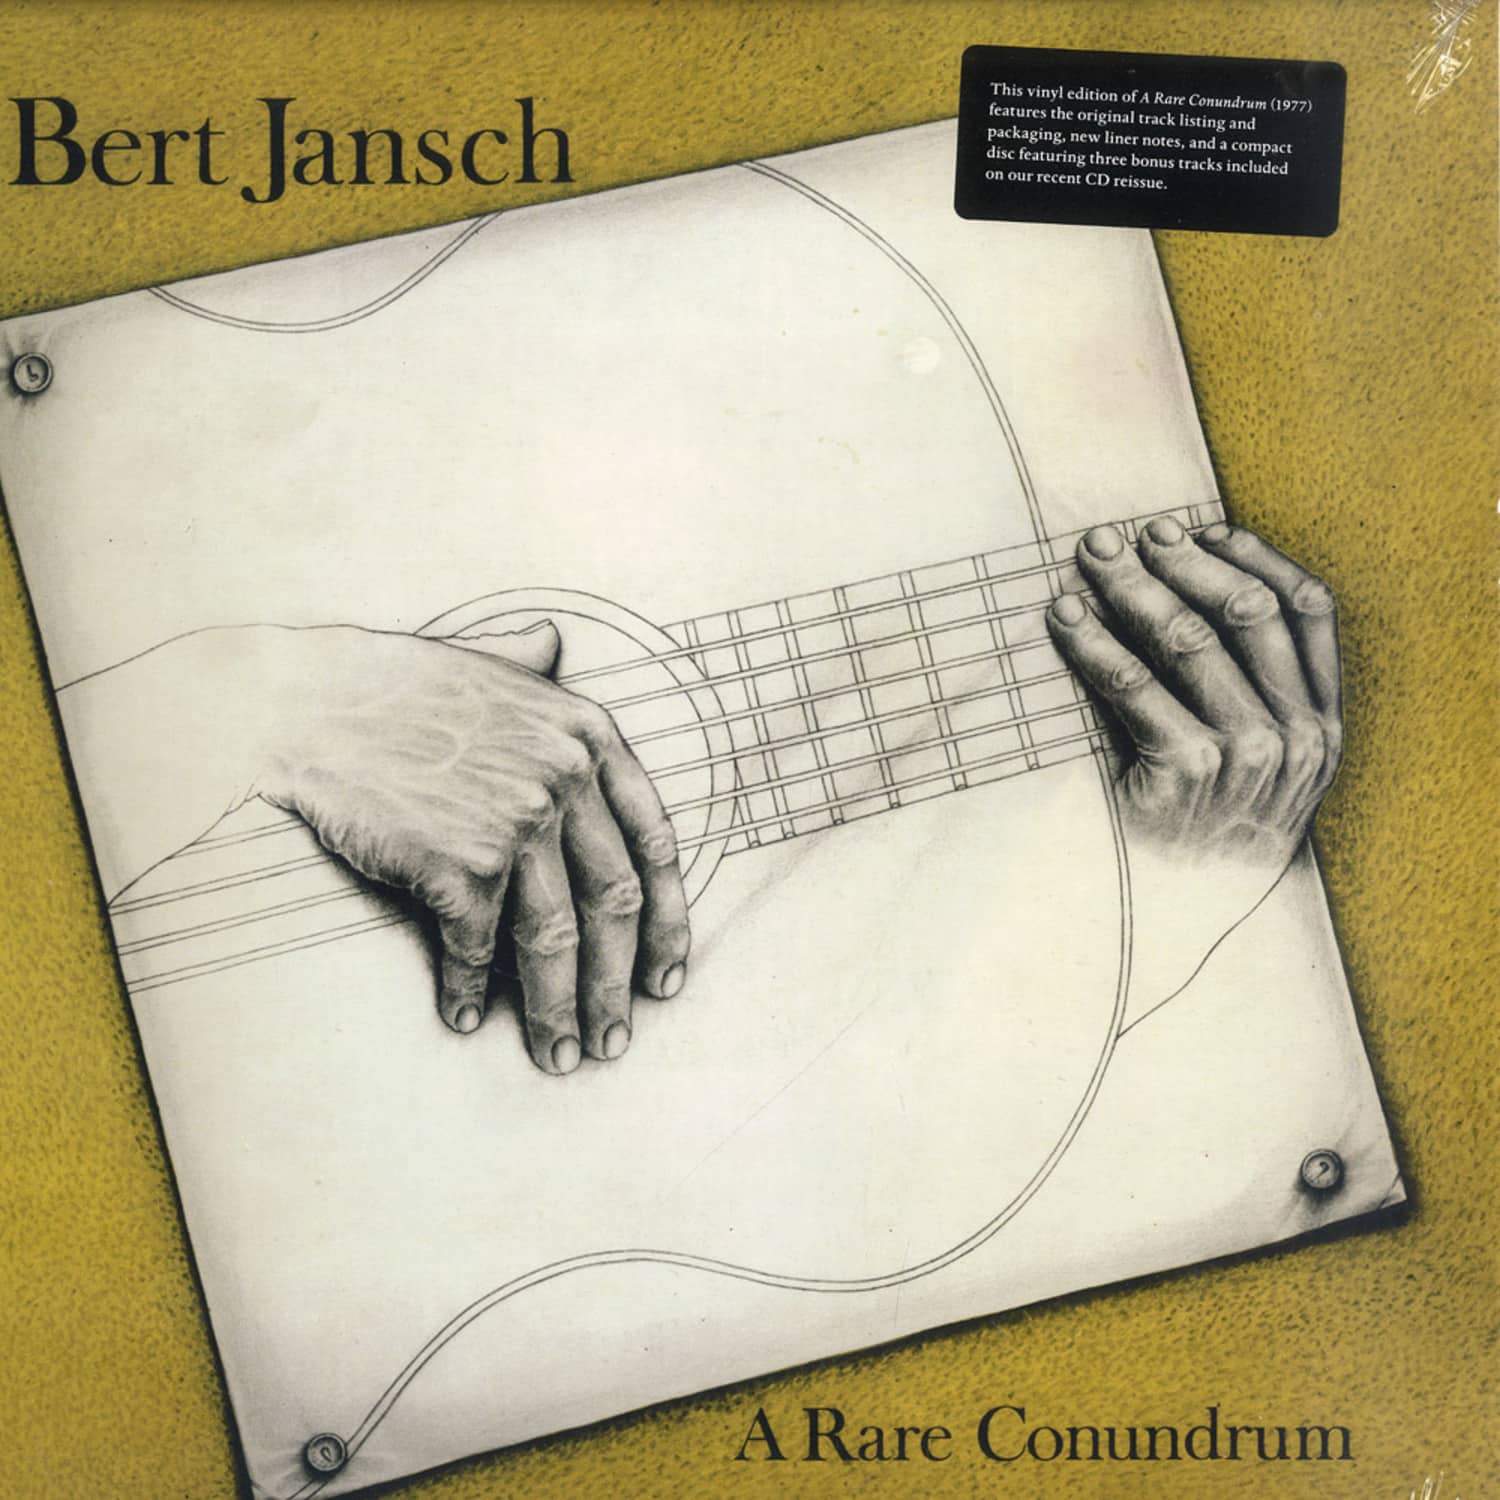 Bert Jansch - A RARE CONUNDRUM